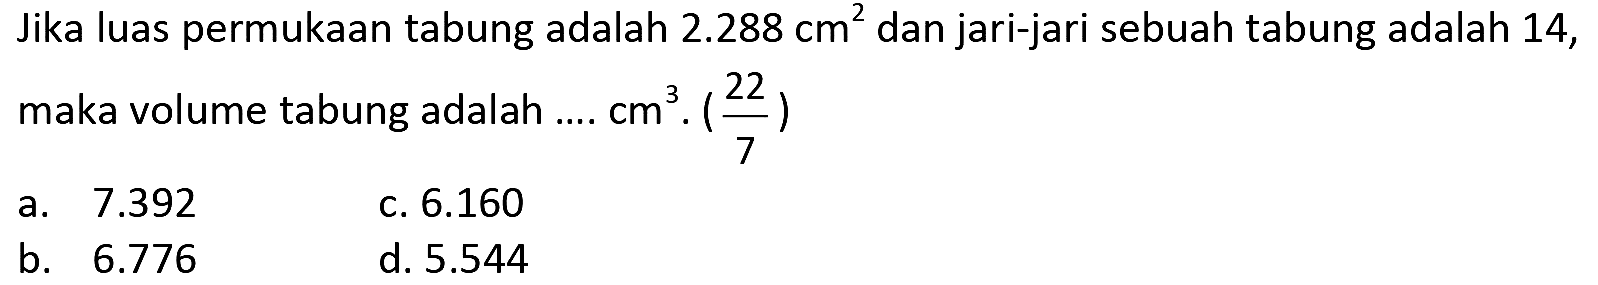 Jika luas permukaan tabung adalah  2.288 cm^(2)  dan jari-jari sebuah tabung adalah 14, maka volume tabung adalah ....  cm^(3) .((22)/(7)) 
a.  7.392 
c.  6.160 
b.  6.776 
d.  5.544 